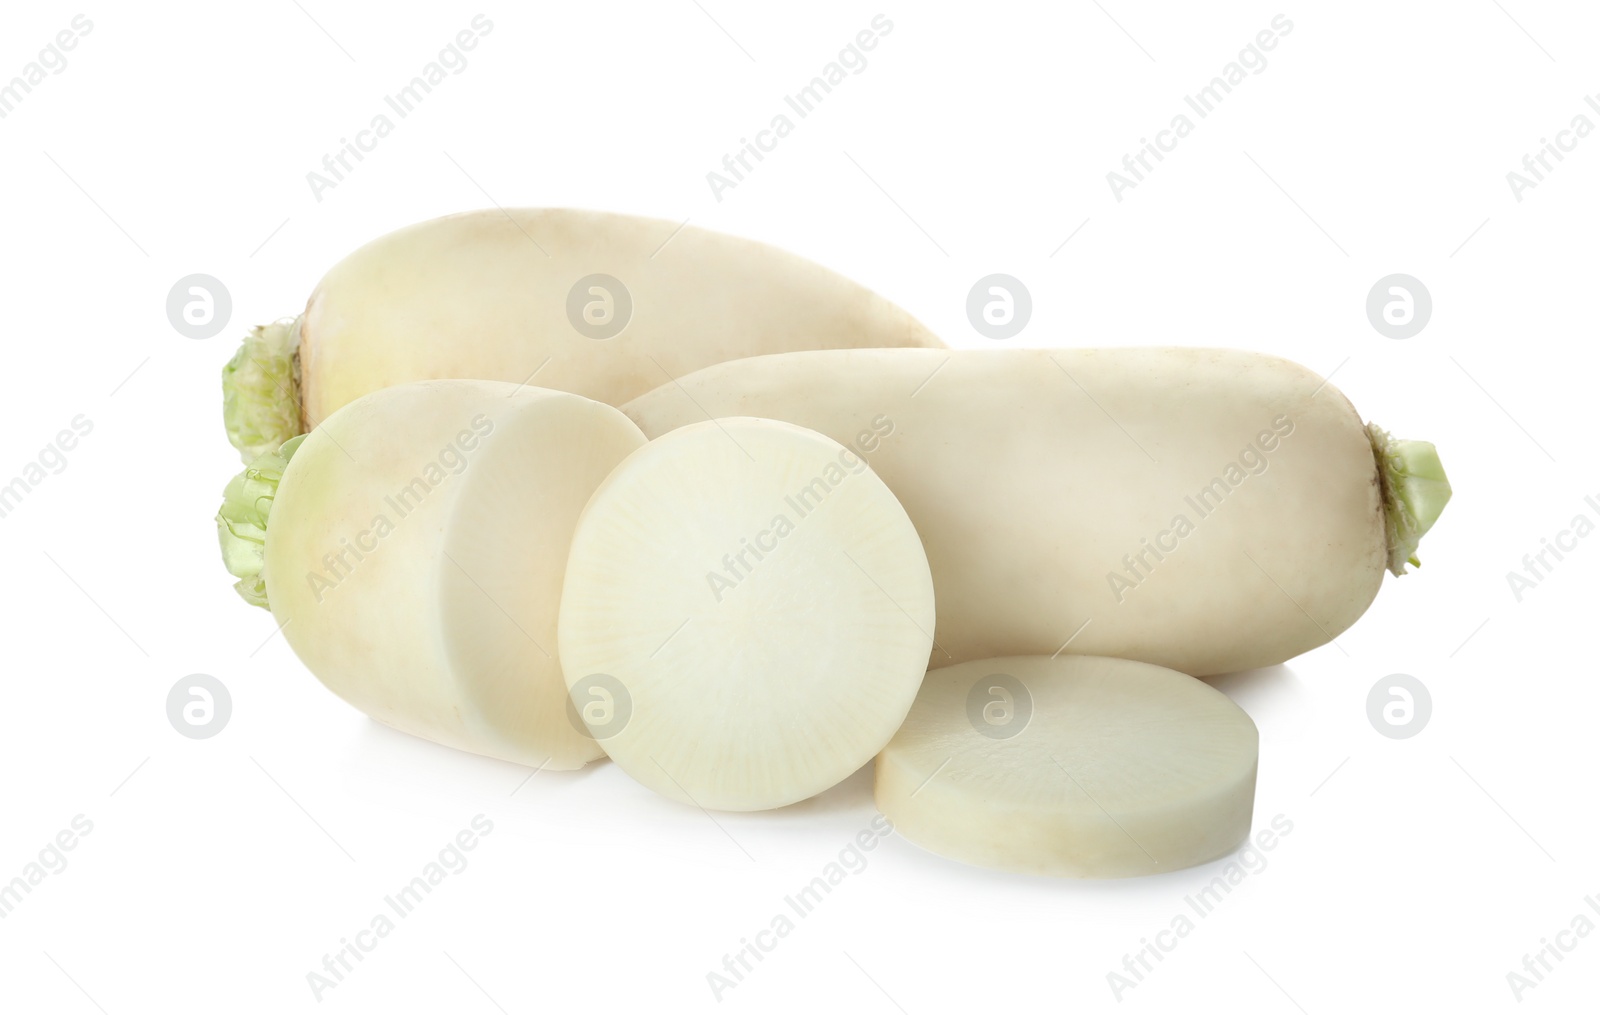 Photo of Sliced and whole fresh ripe turnips on white background